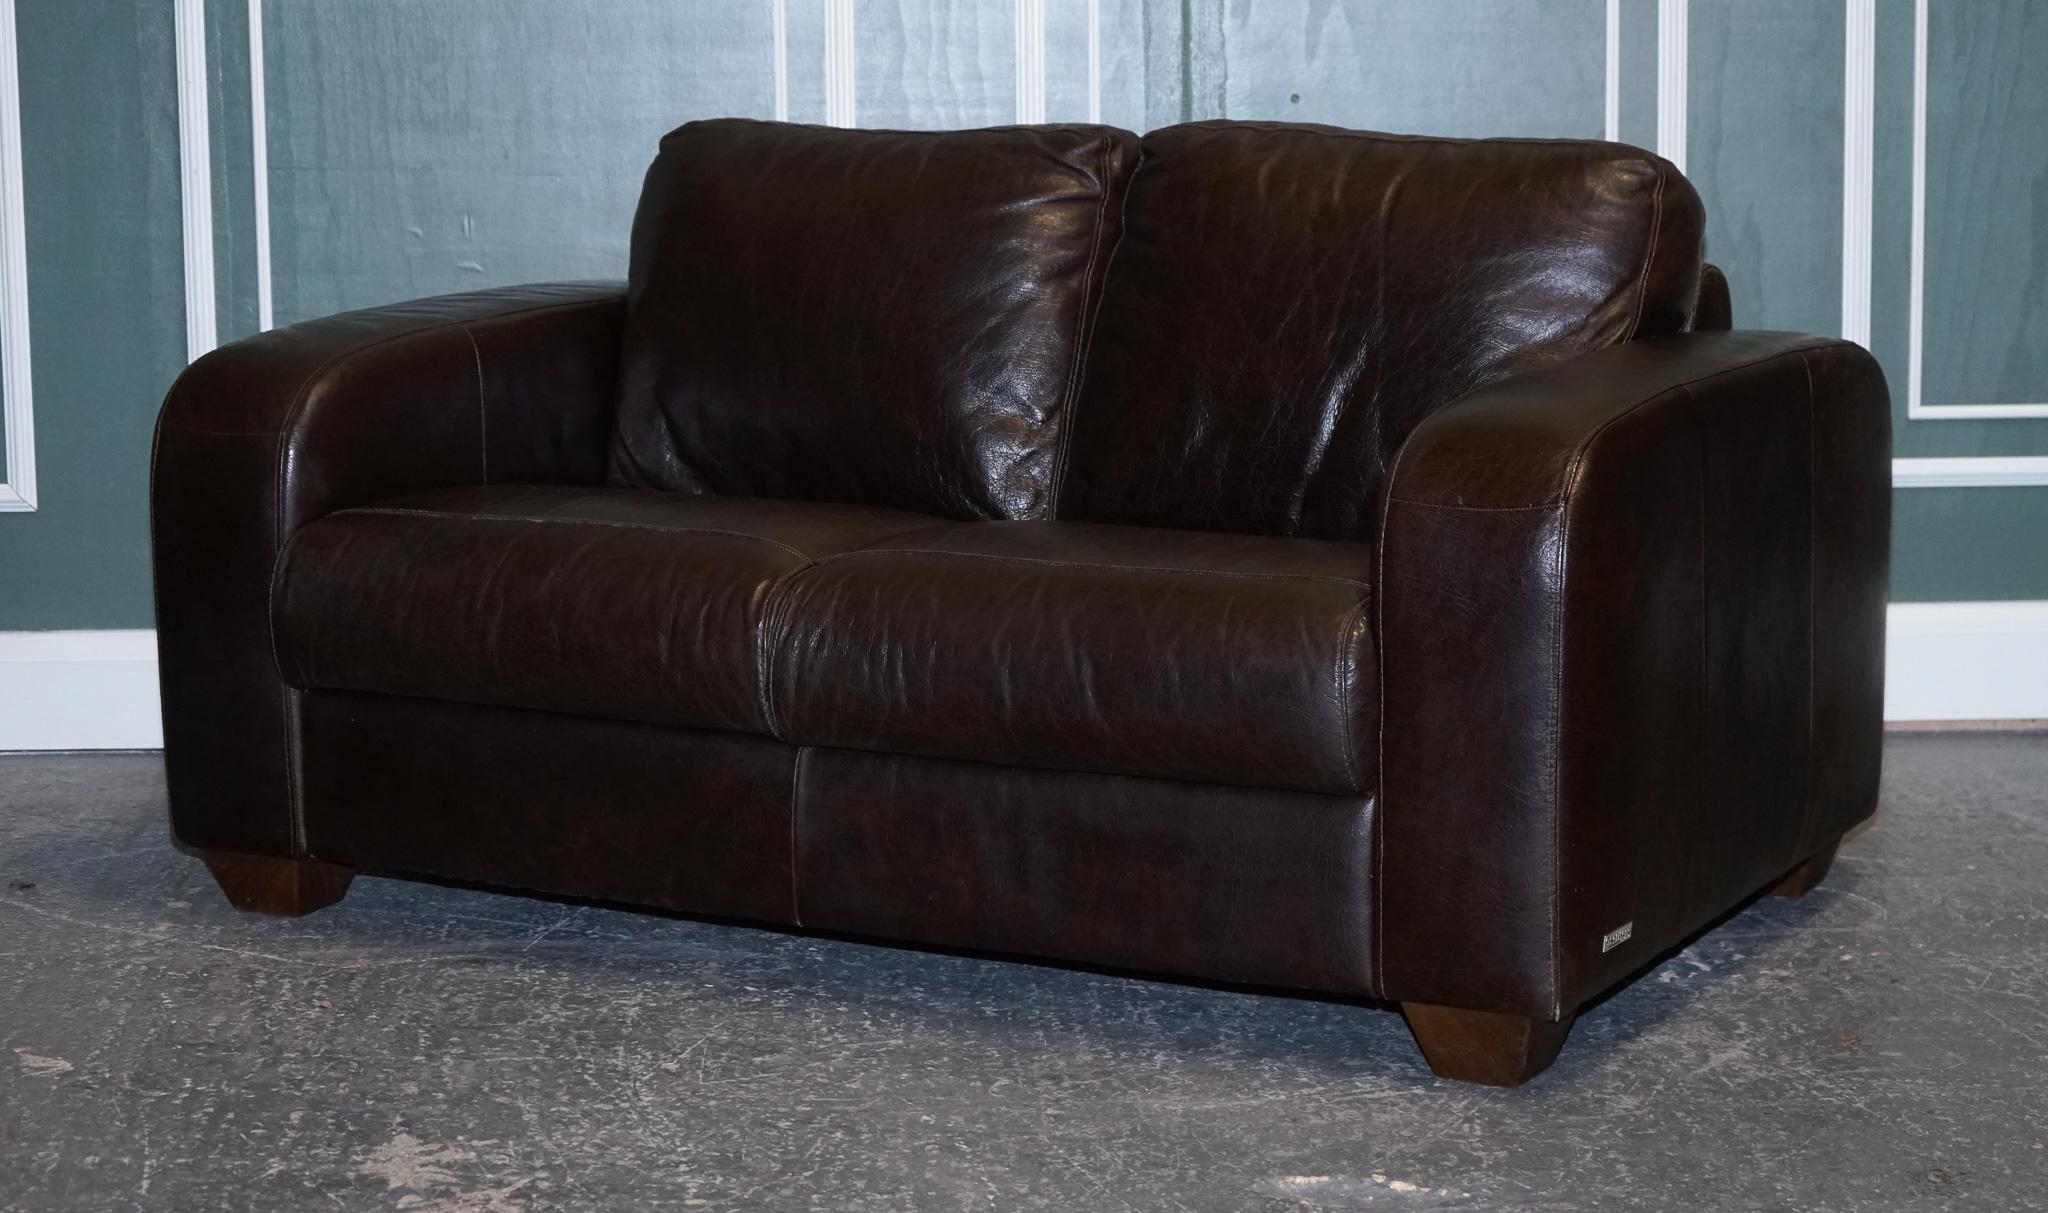 sofitalia international leather sofa